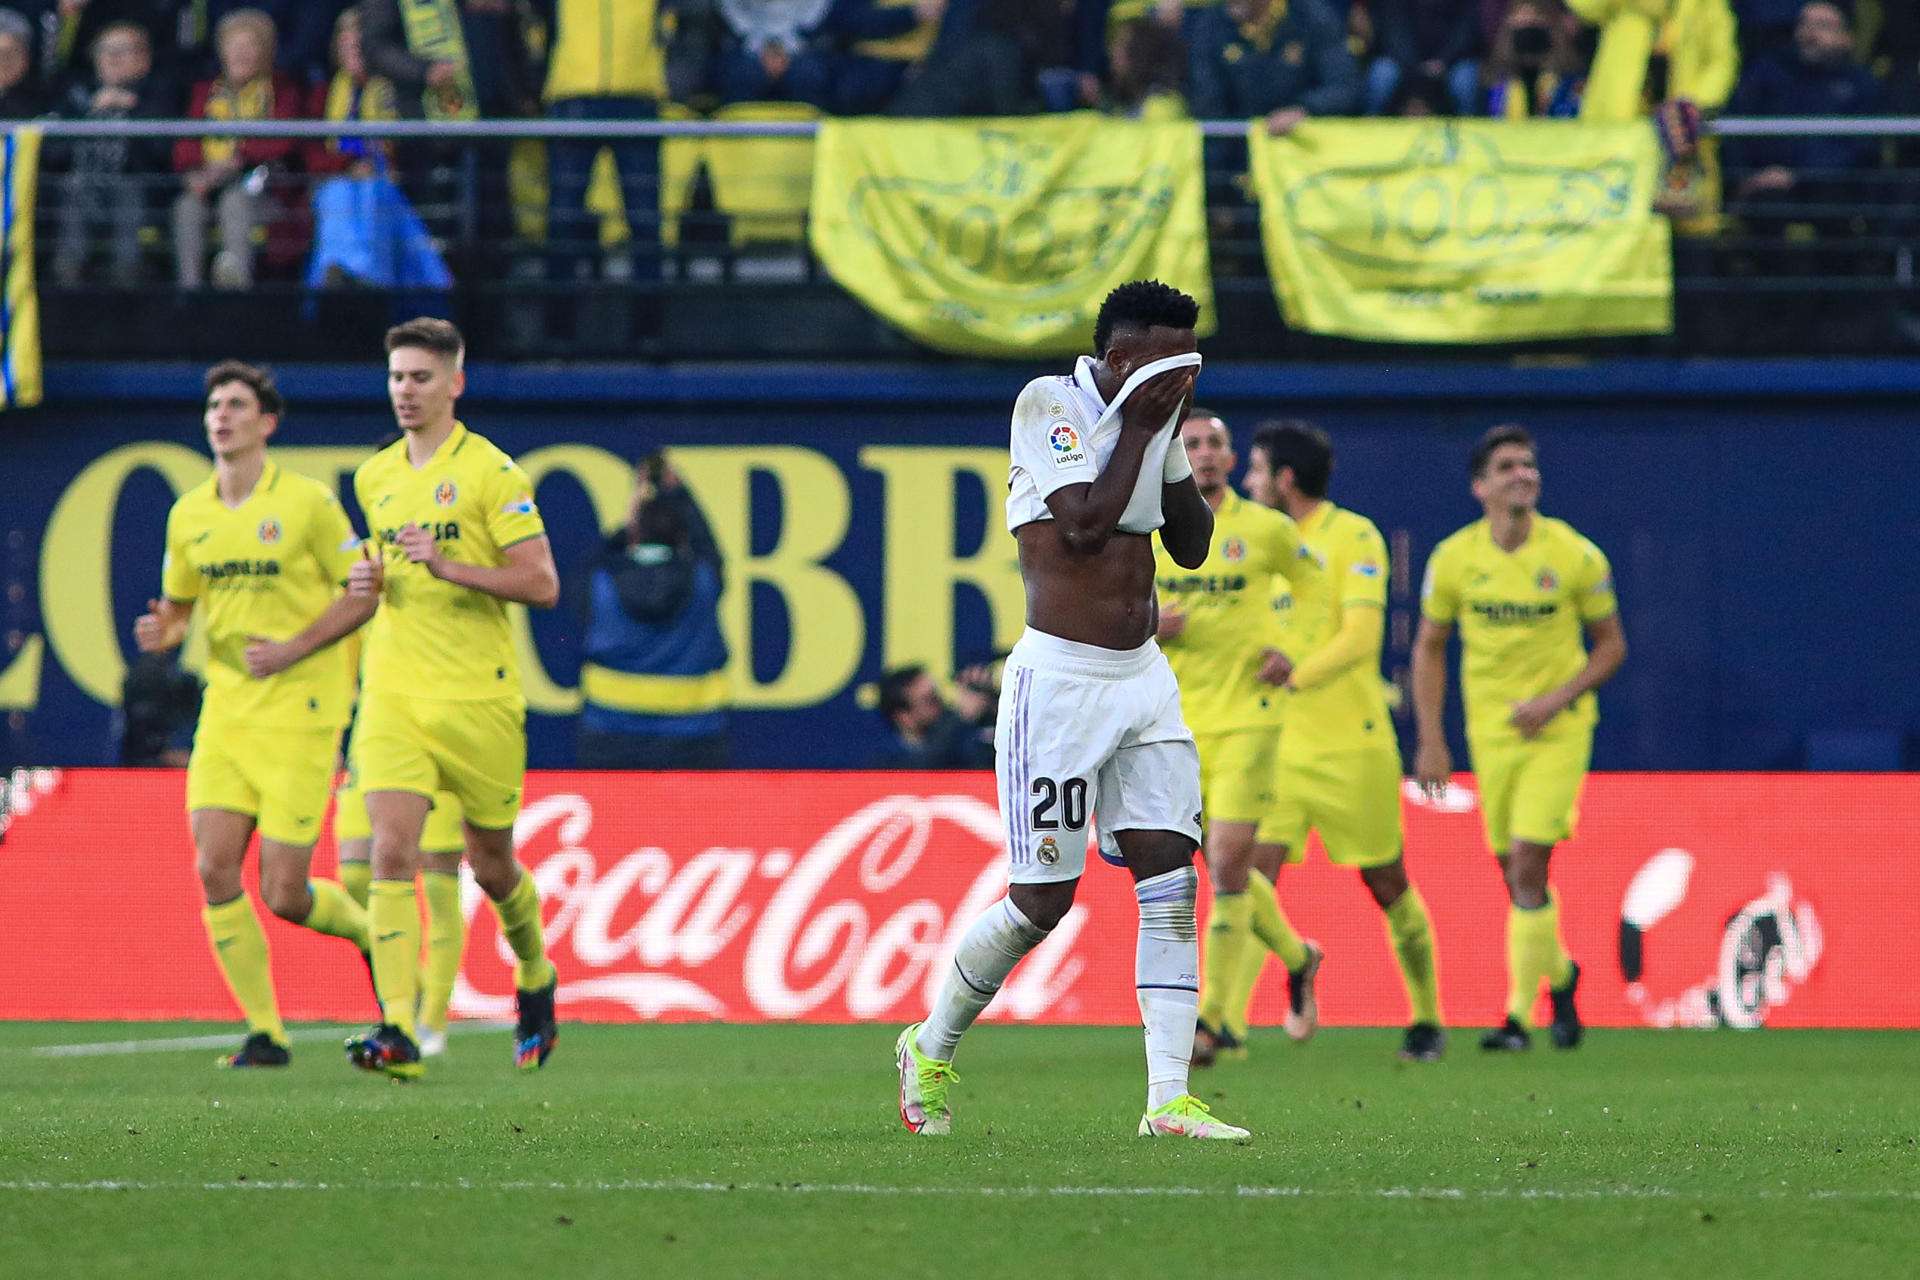 inicius Jr (c) tras el gol marcado por el Villareal durante el partido de la jornada 16 de LaLiga Santander. /EFE